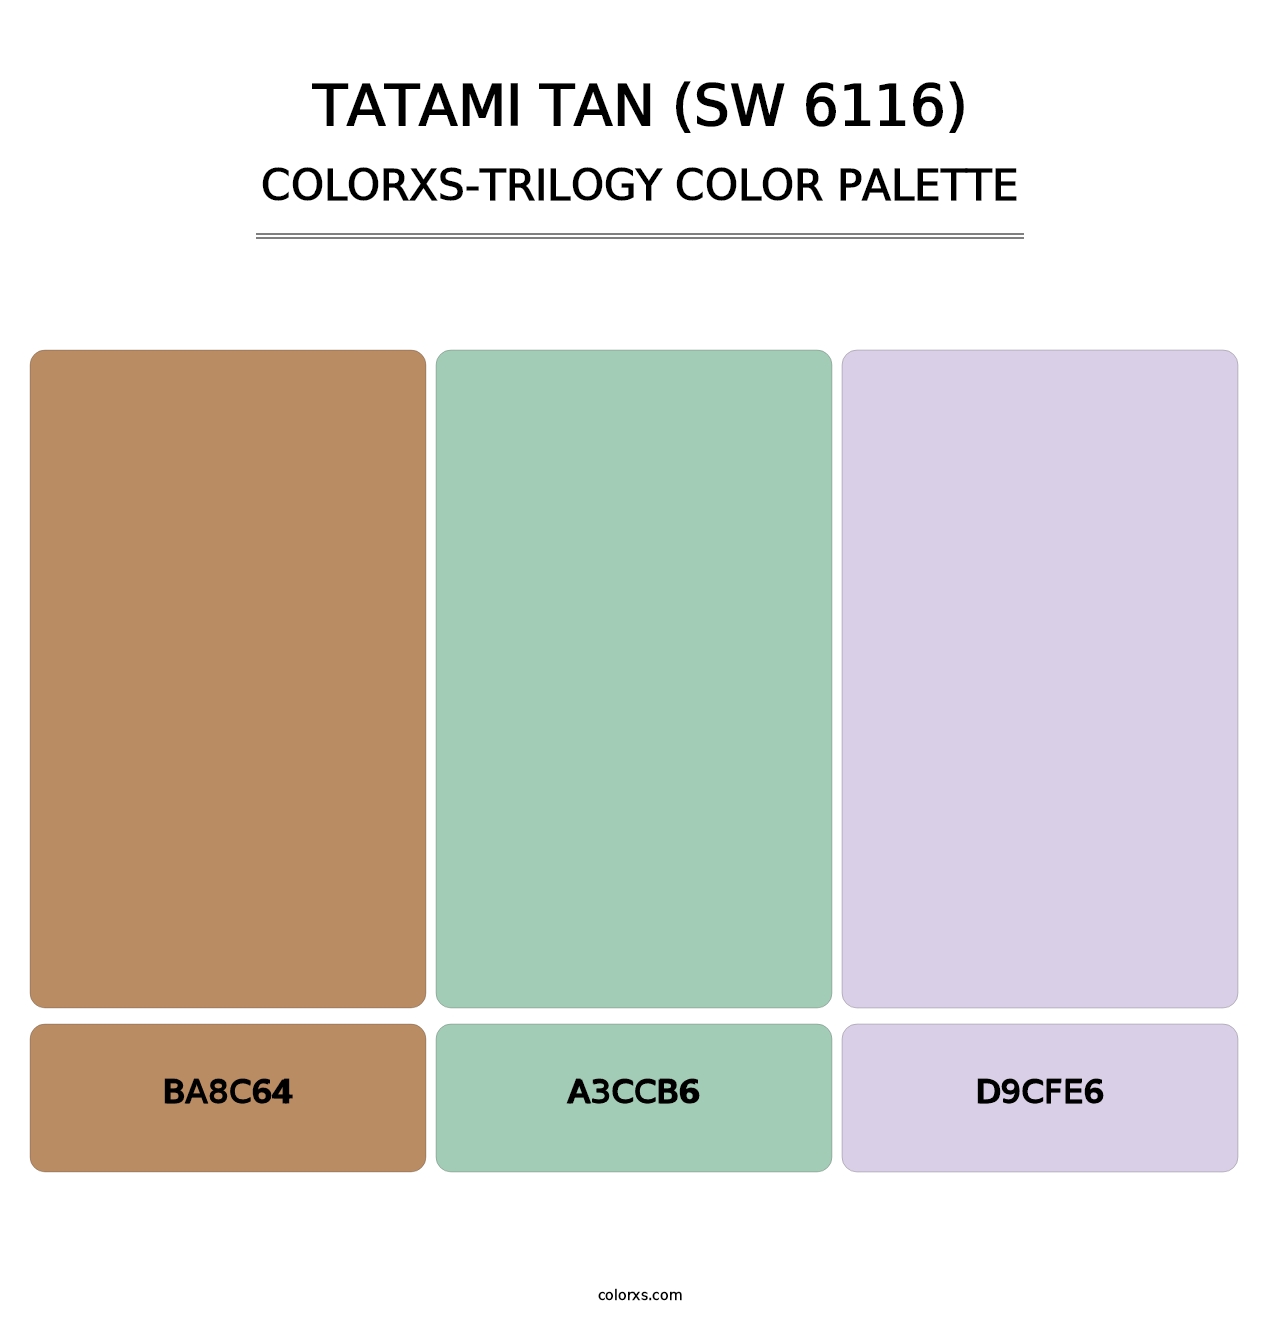 Tatami Tan (SW 6116) - Colorxs Trilogy Palette